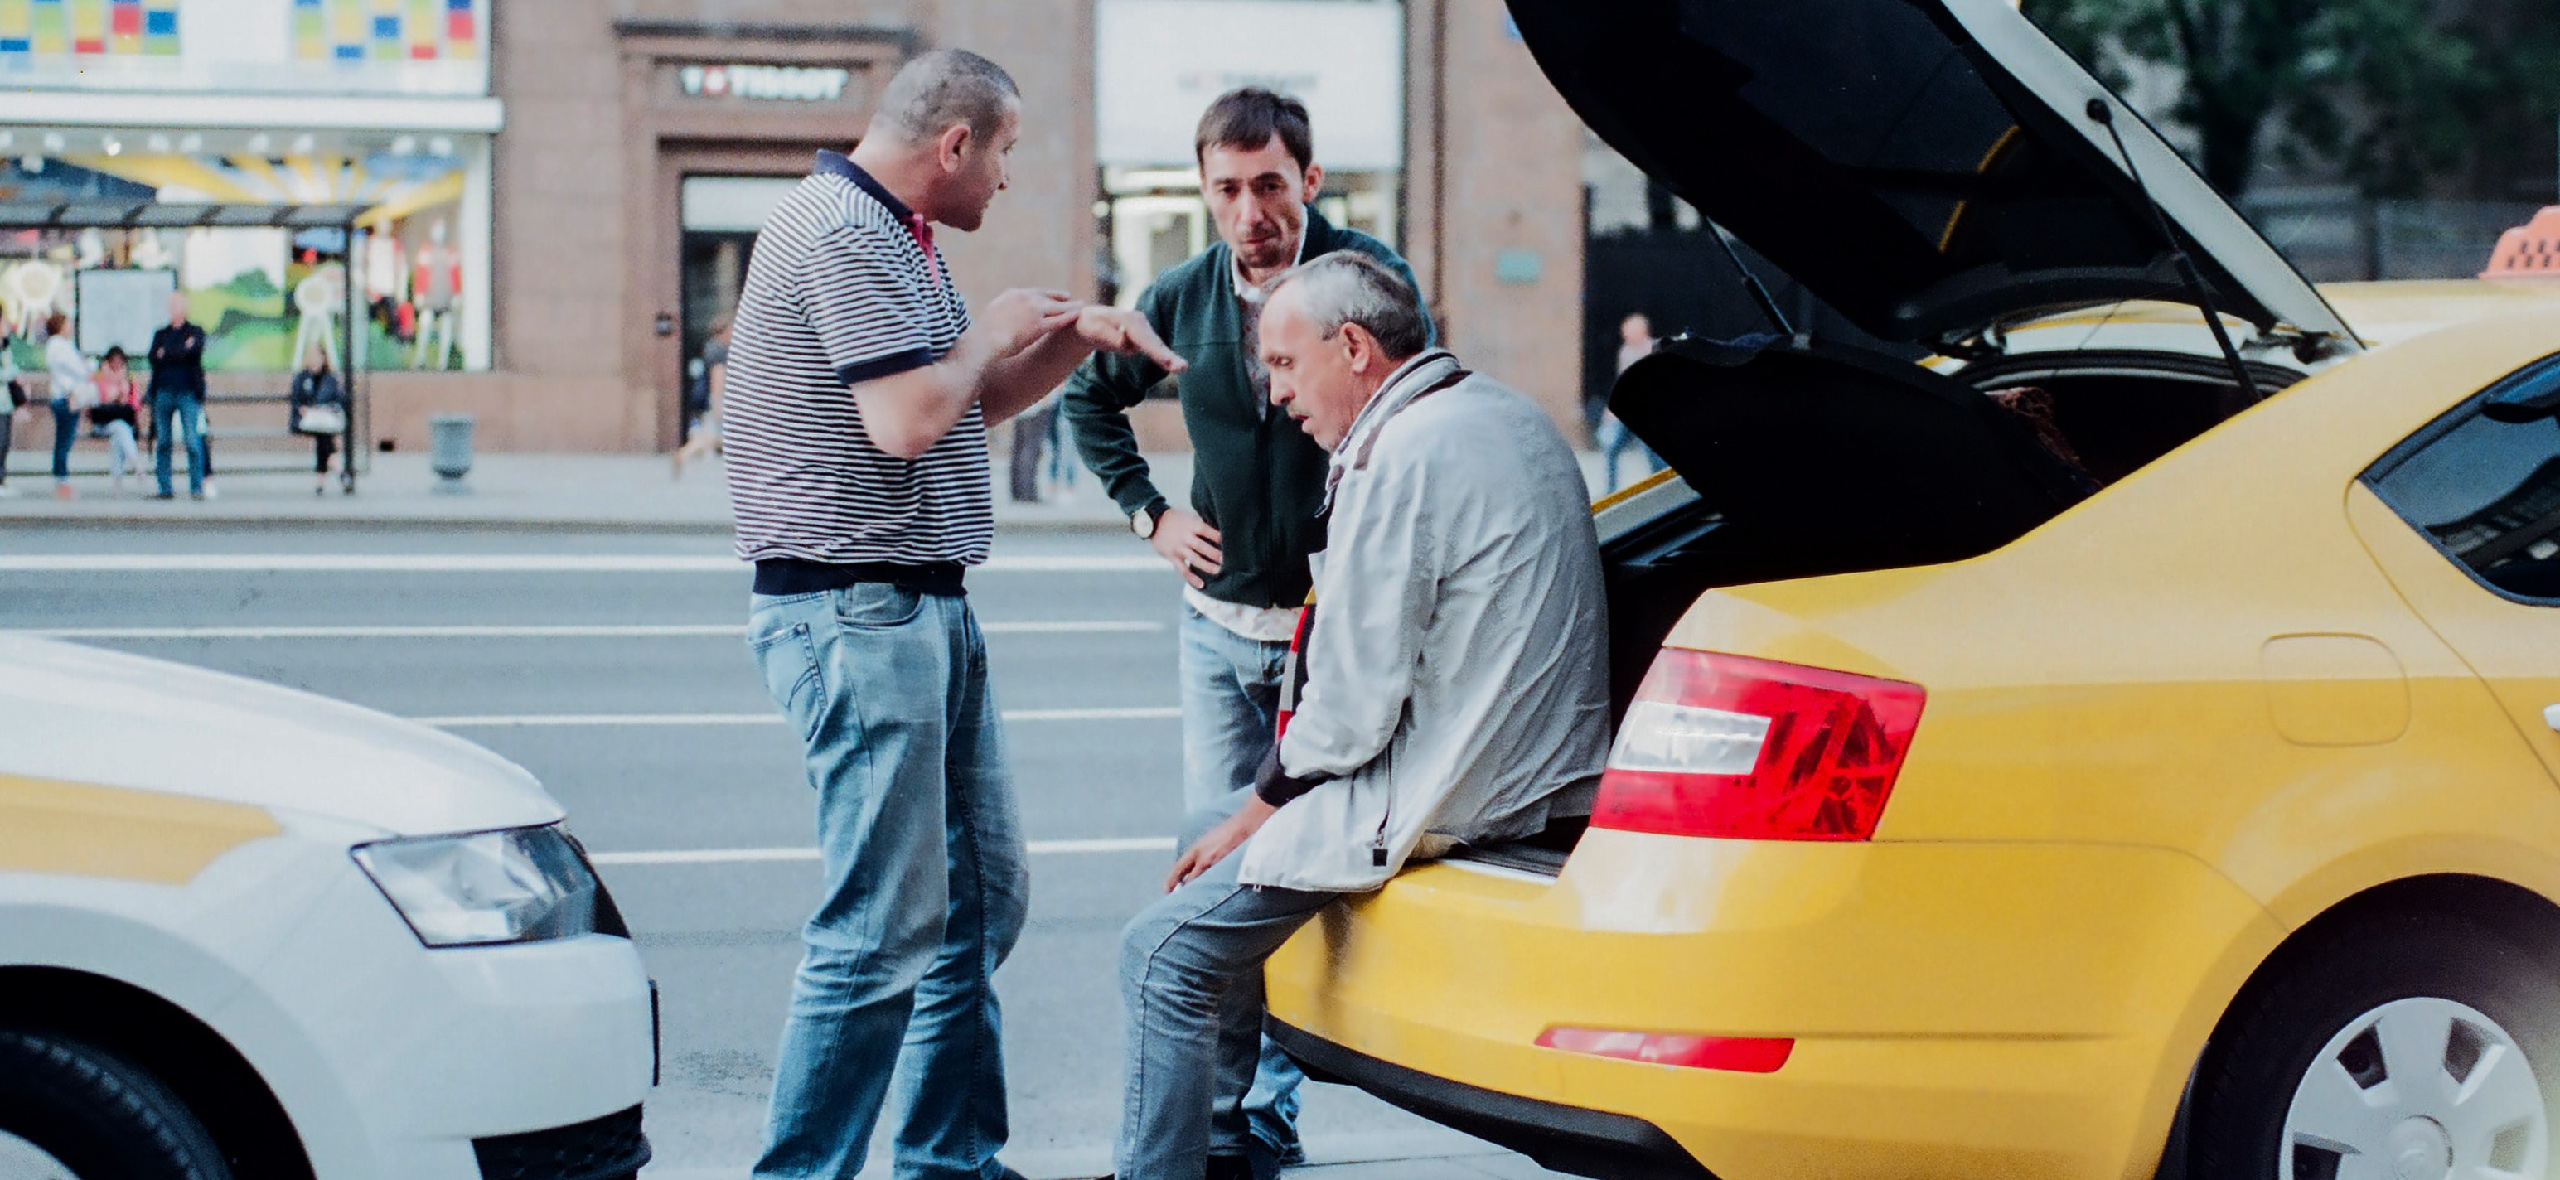 Закон о работе такси: что меняется для перевозчиков и какие данные будут передавать в МВД и ФСБ